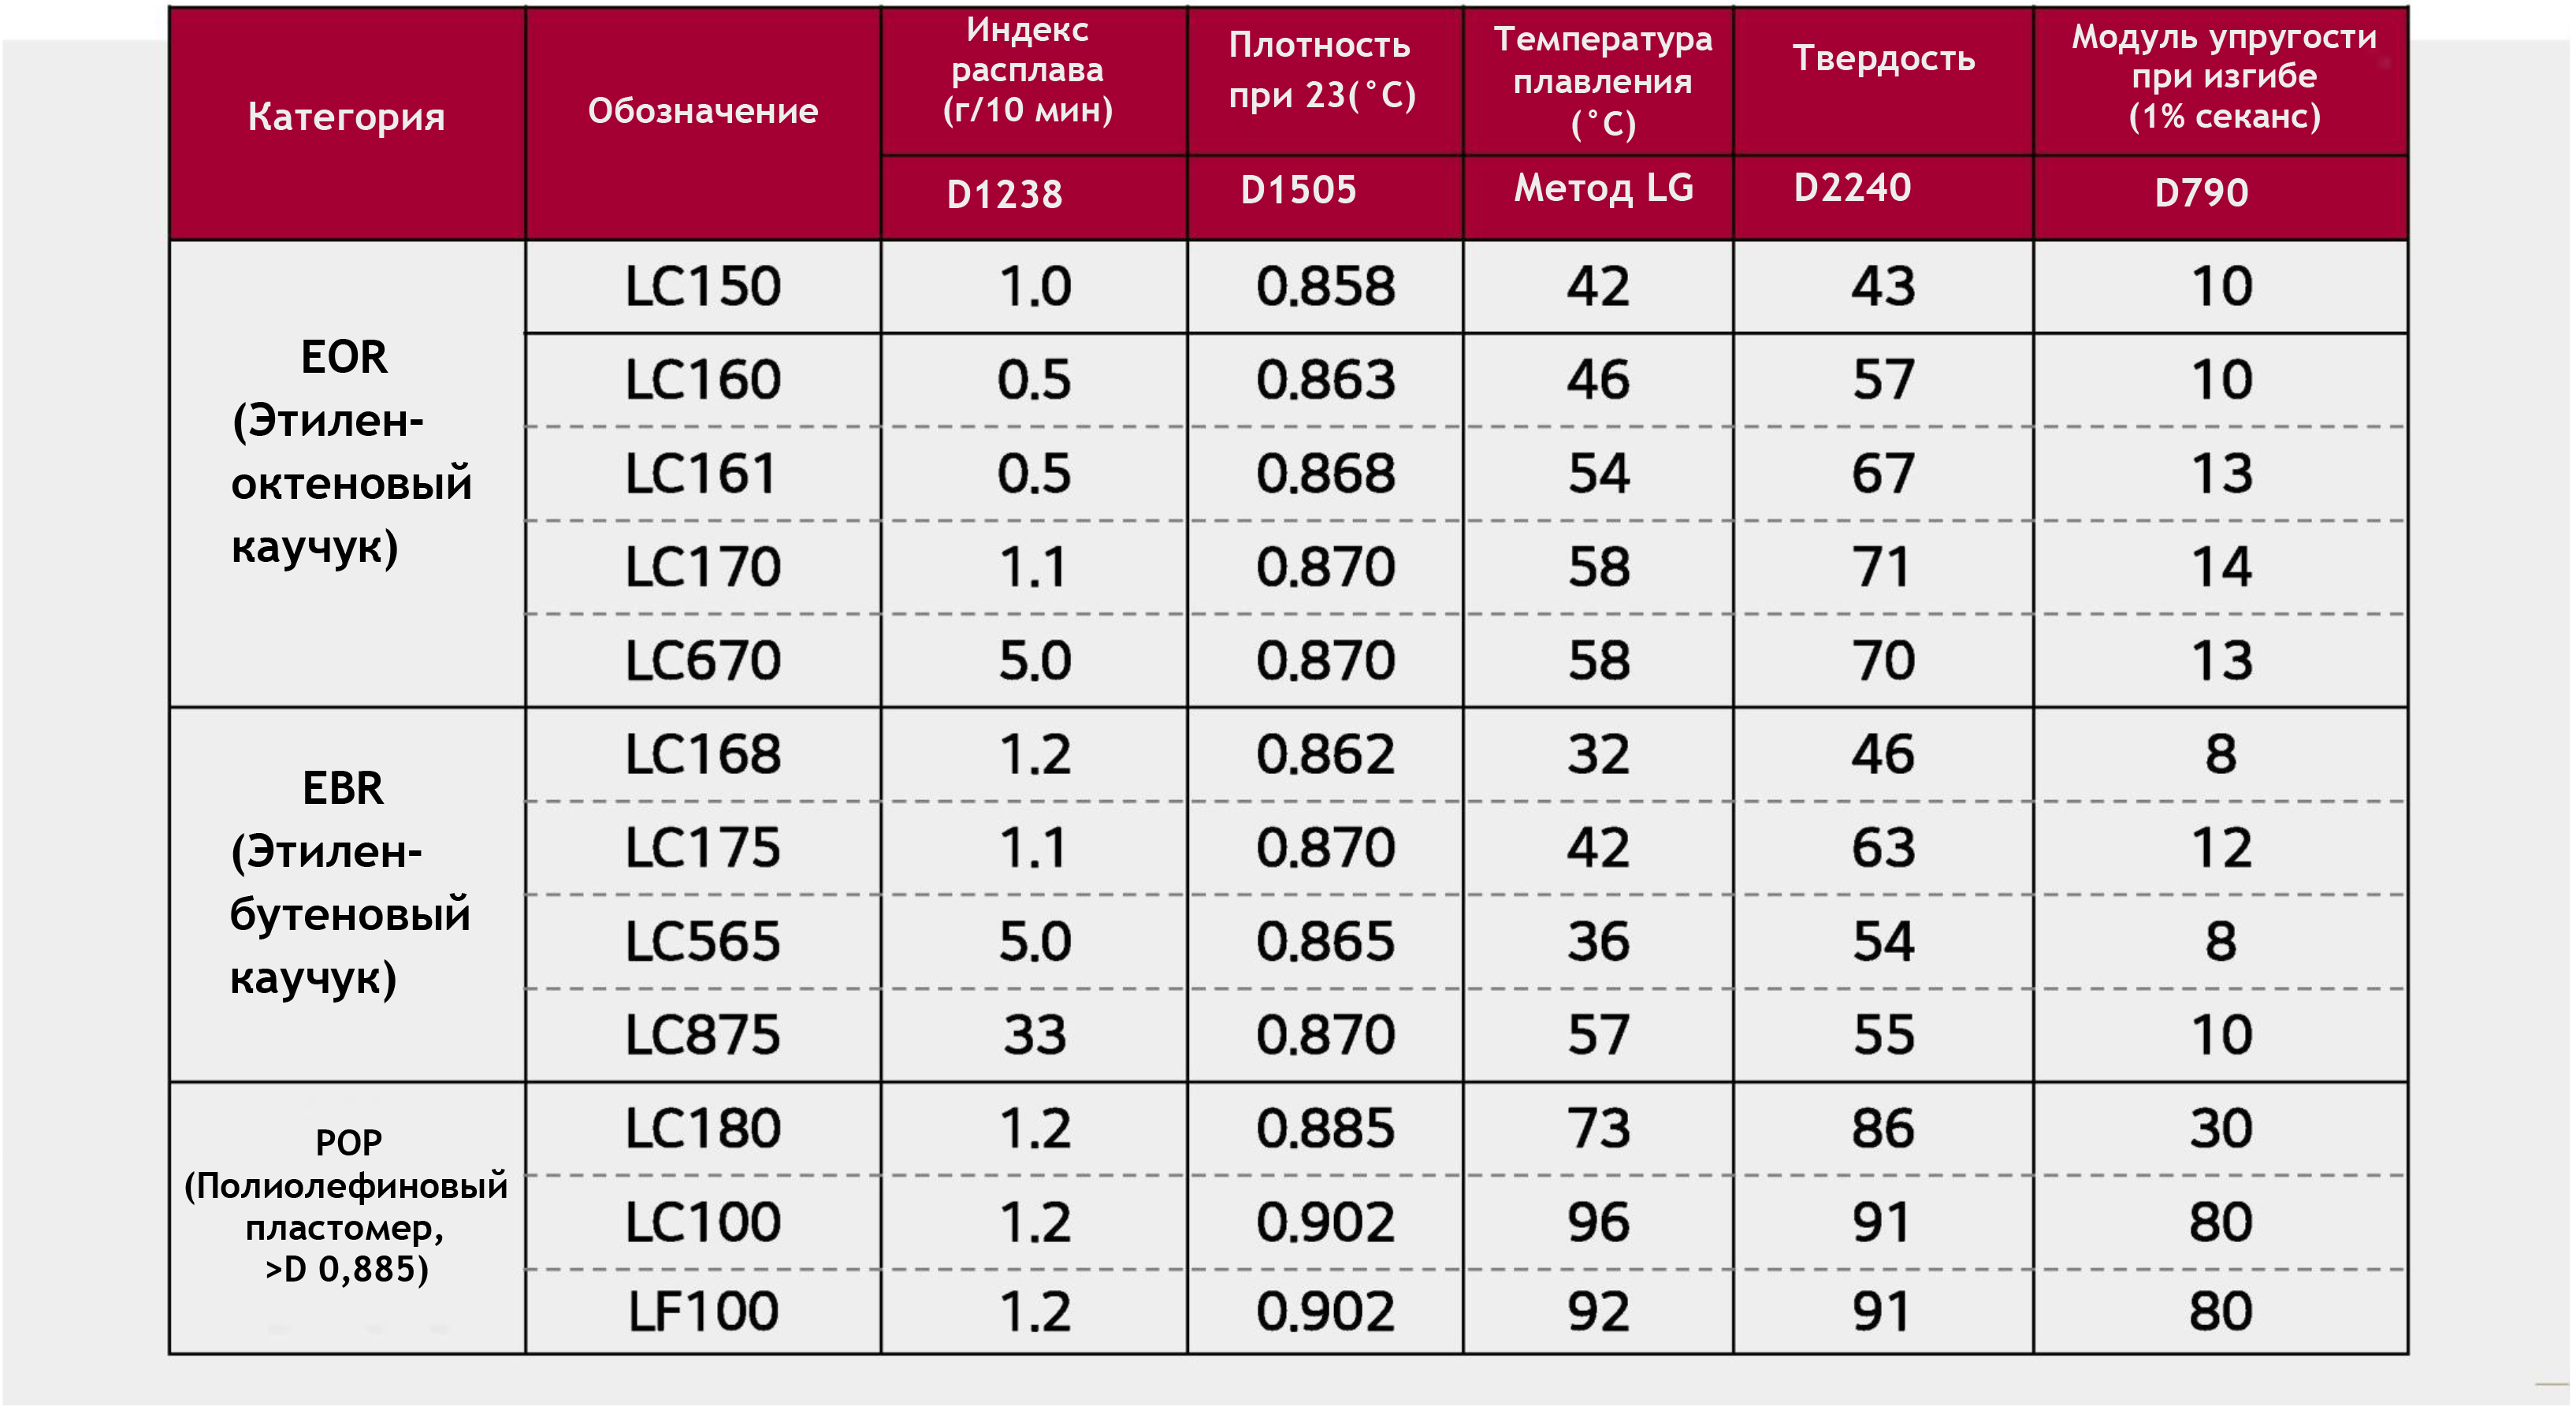 Области применения и типовые характеристики РОЭ и ПОП от LG Chem